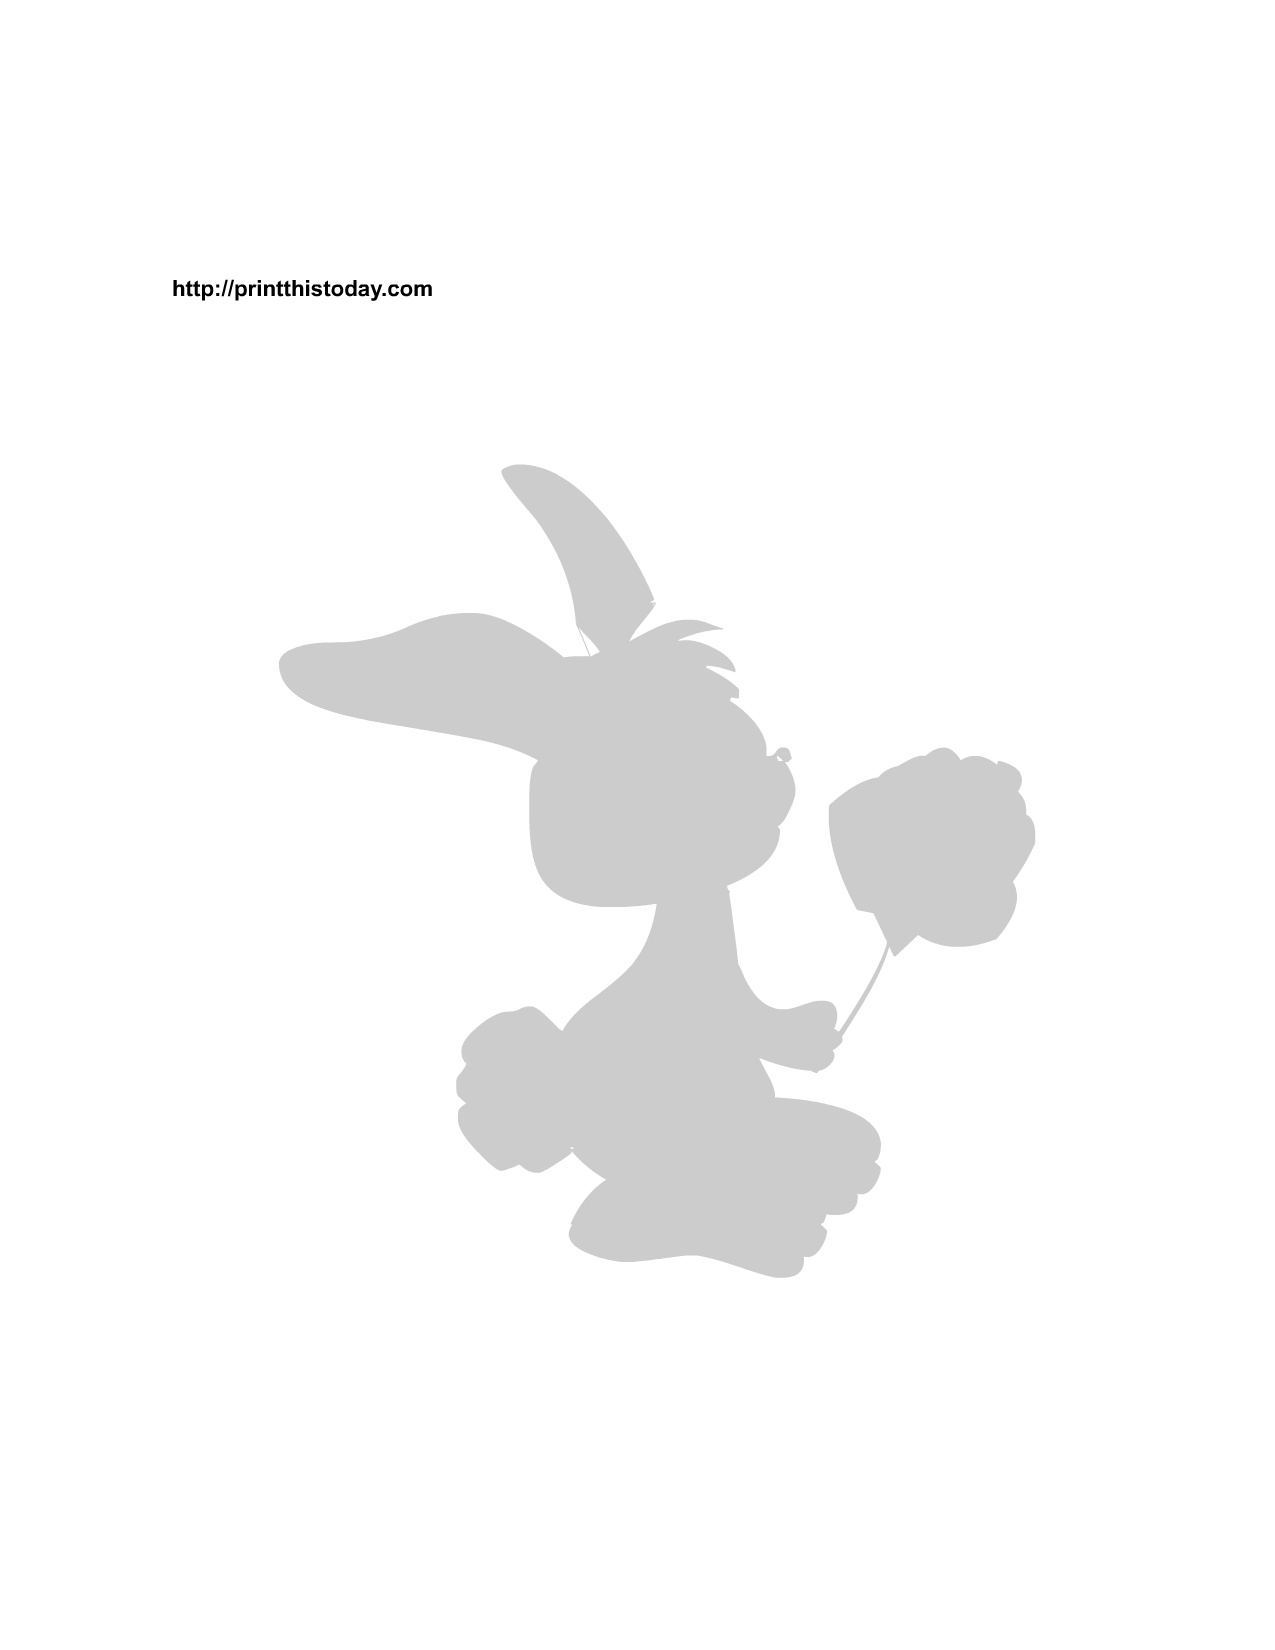 Free Printable Bunny Stencils